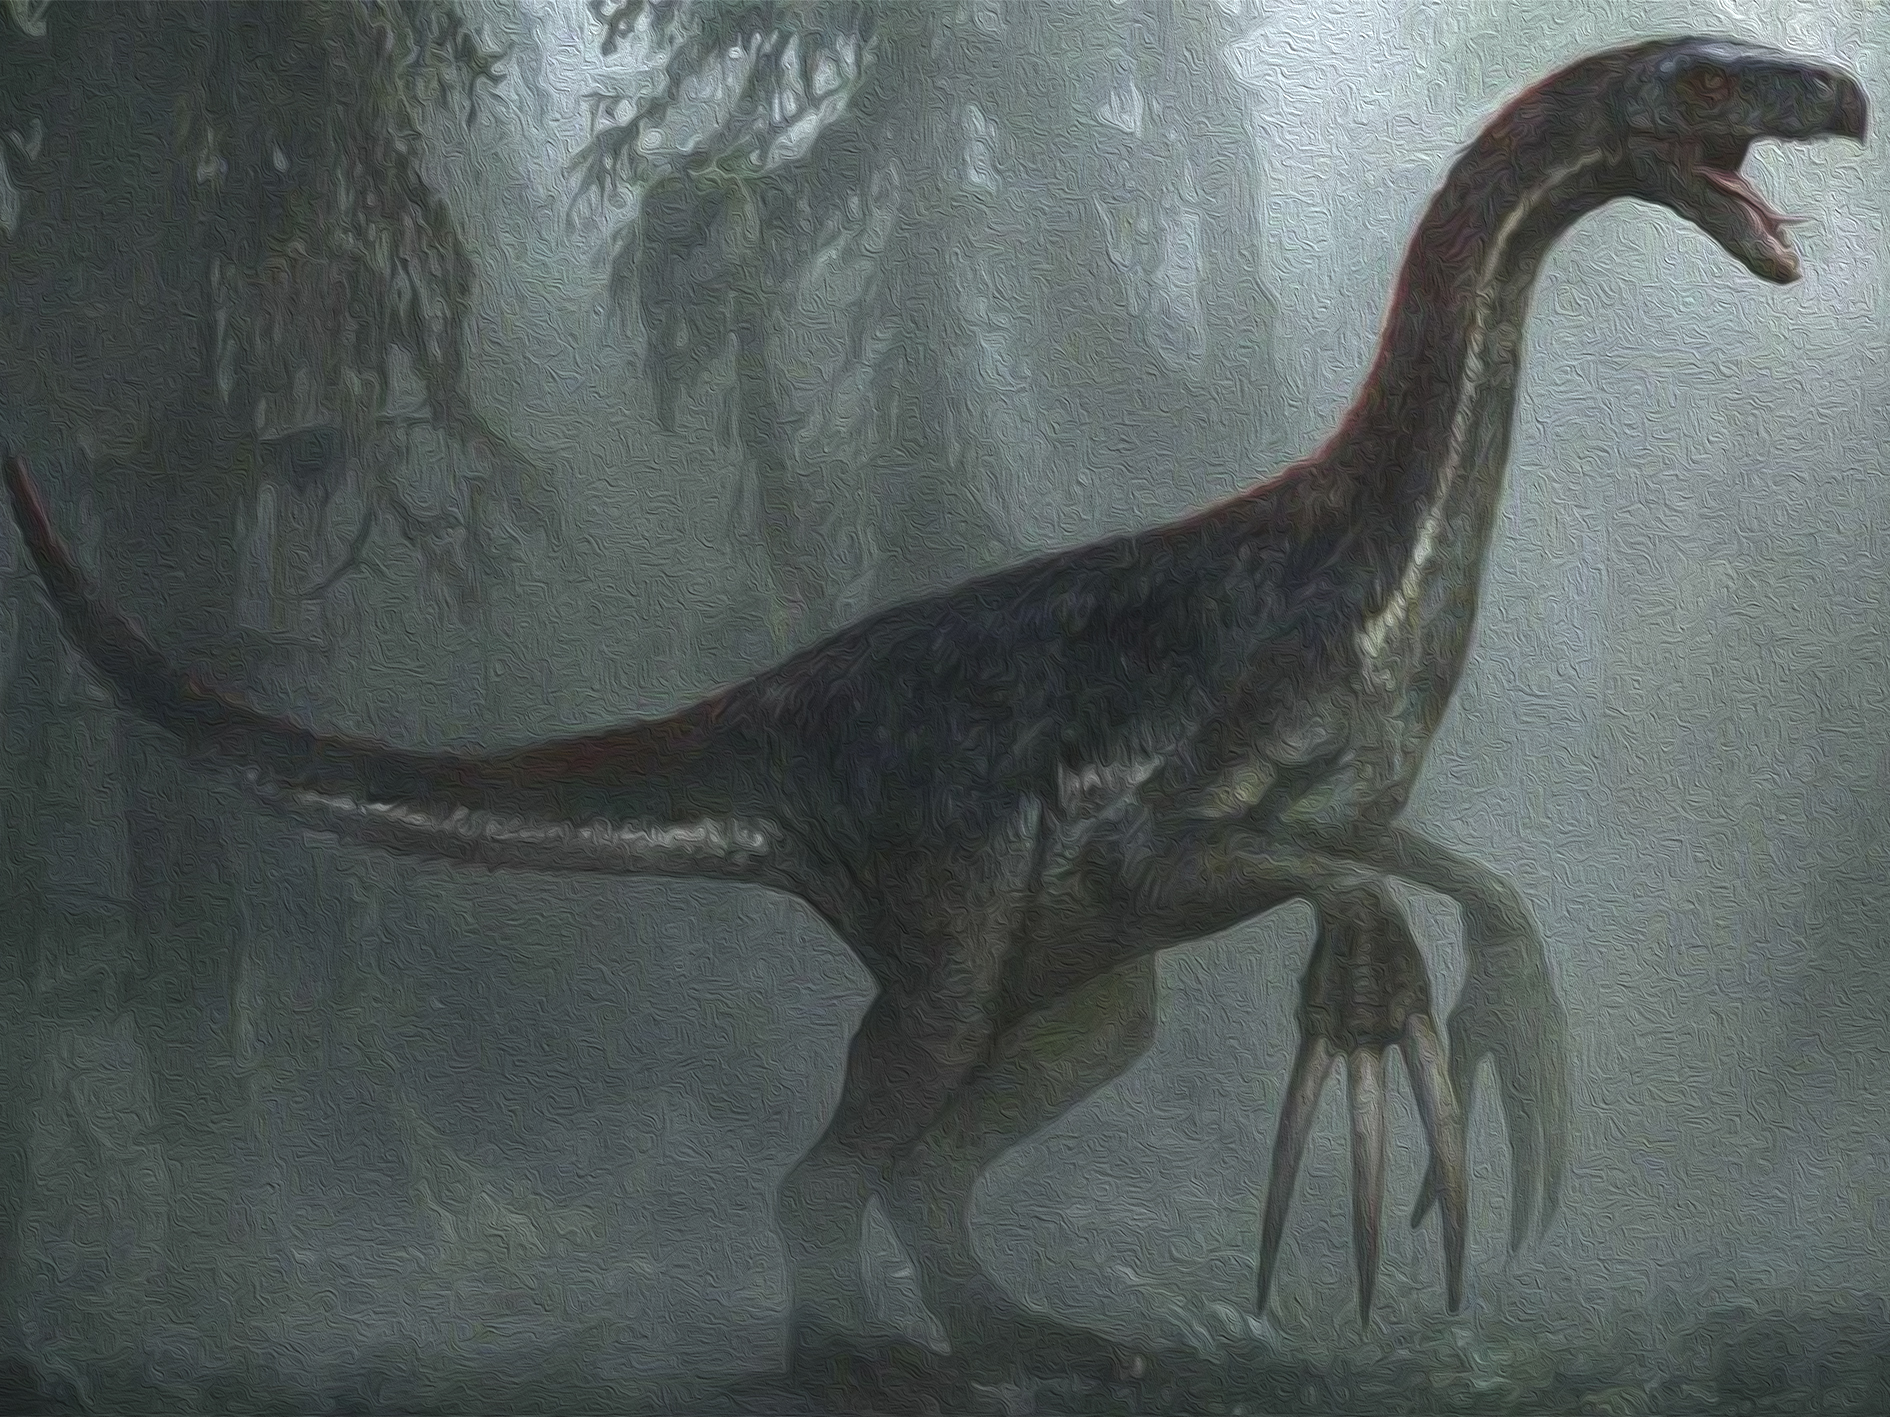 Мир динозавров 3. Теризинозавр мир Юрского периода 3 господство. Теризинозавр Jurassic World. Теризинозавр мир Юрского периода 3. Мир Юрского периода 3 теризенизоврп.